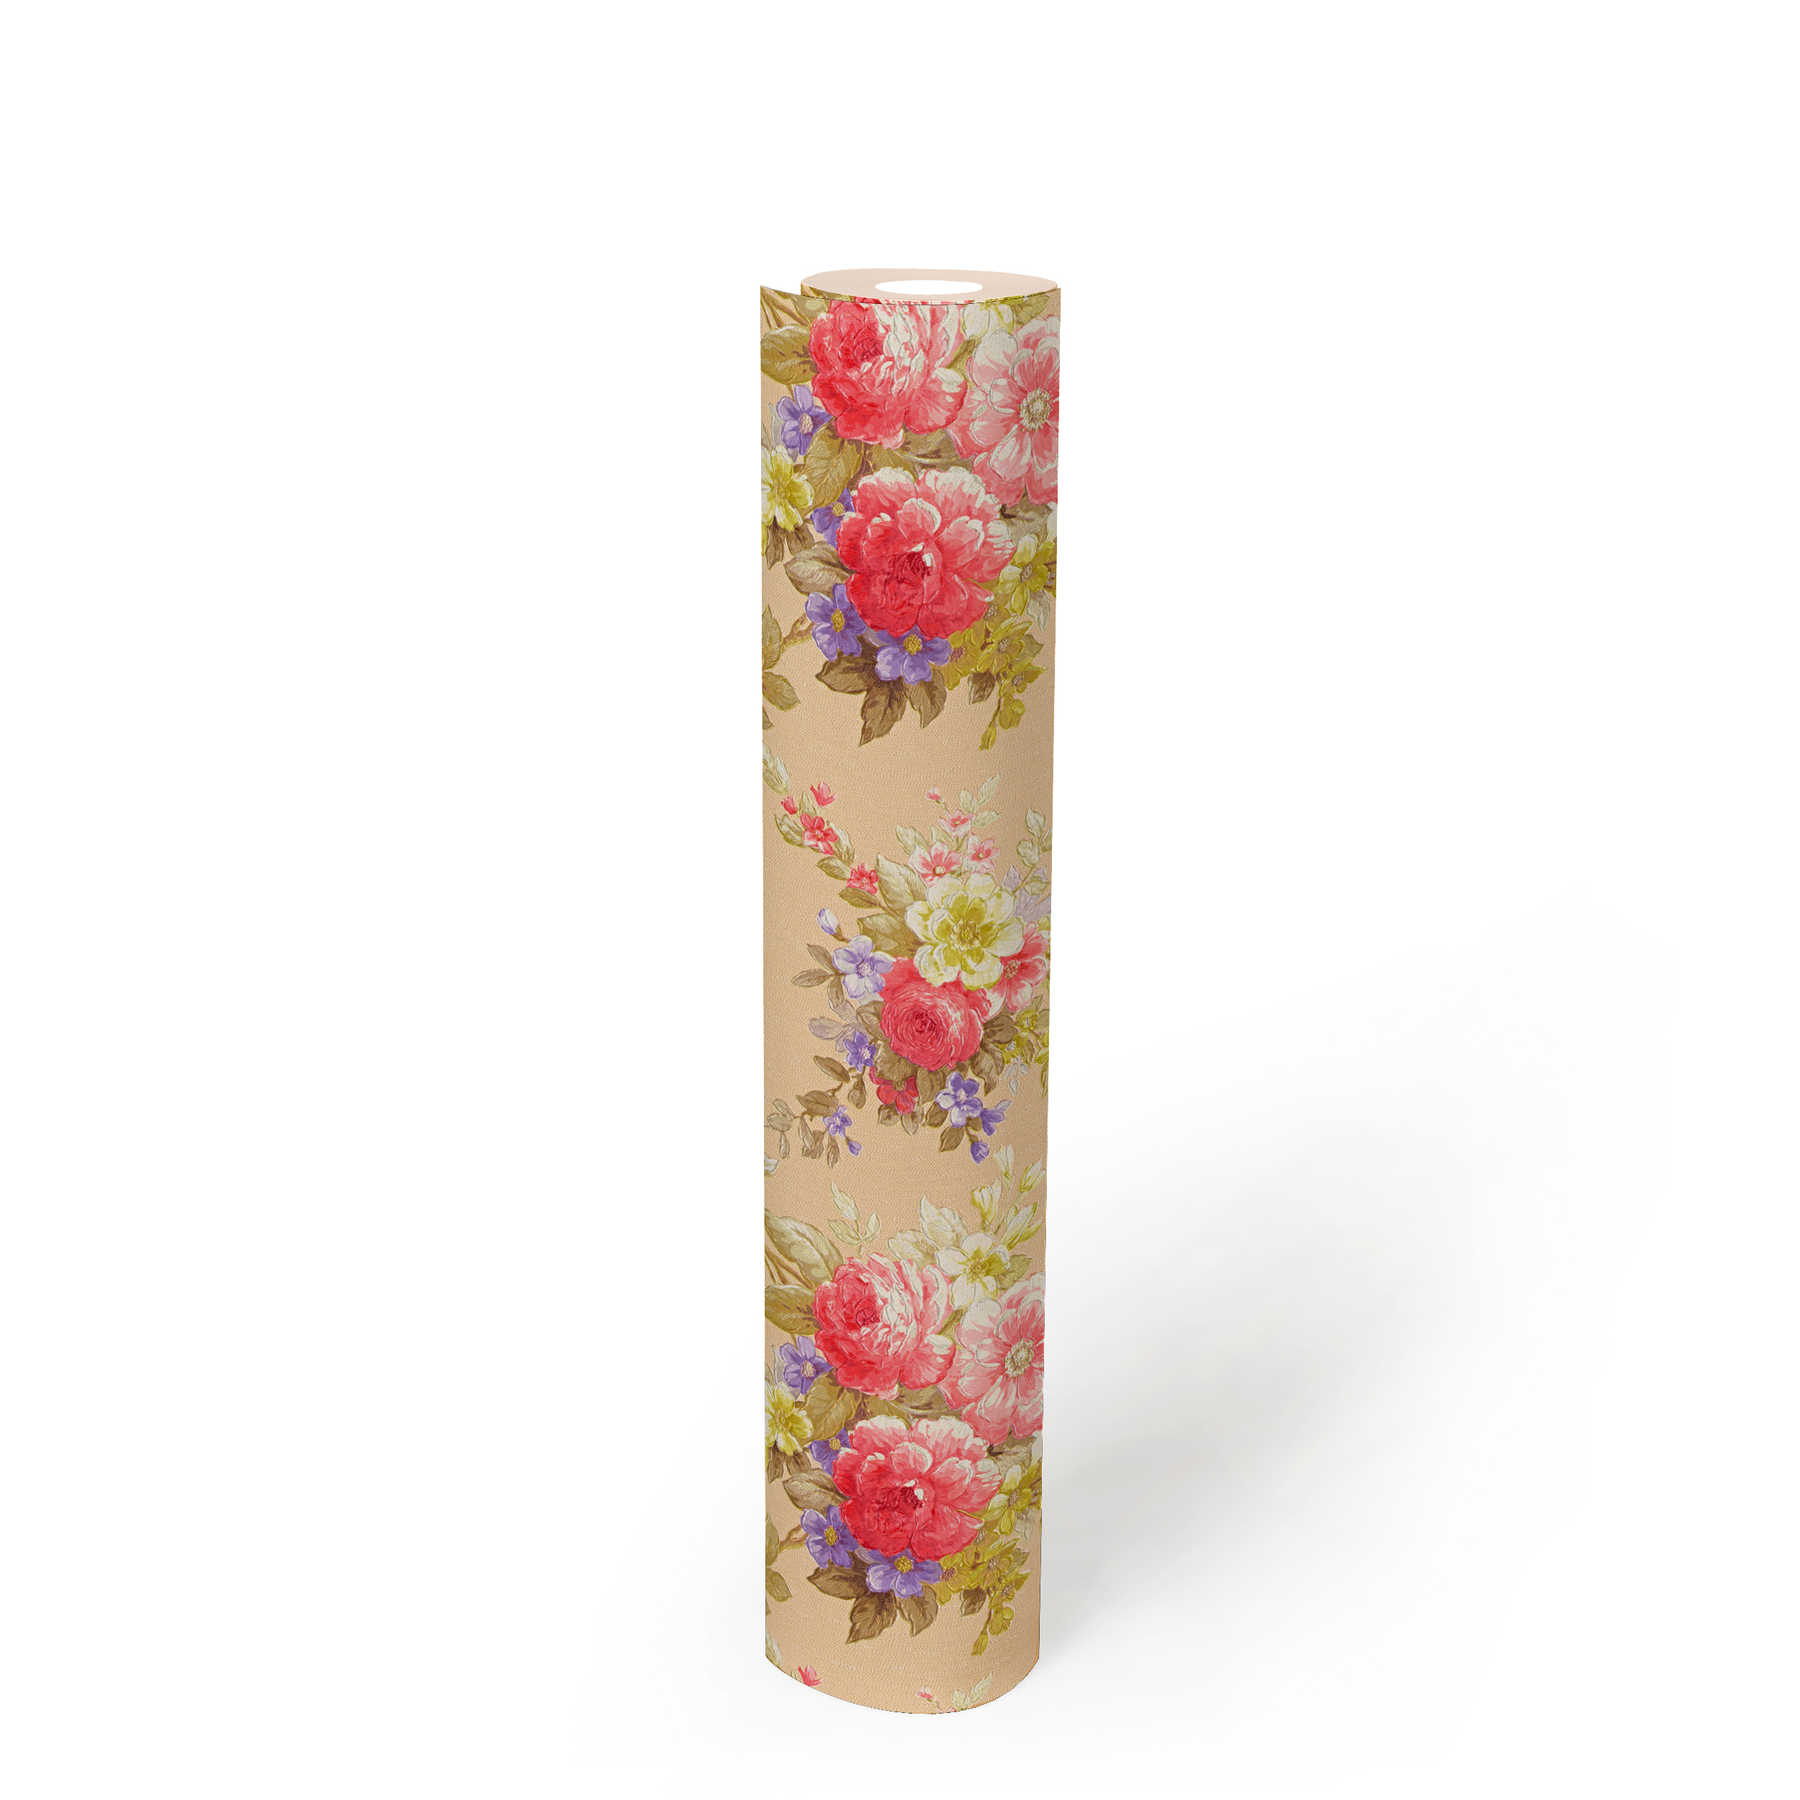             Papier peint ornements roses motif bouquet floral - multicolore, métallique
        